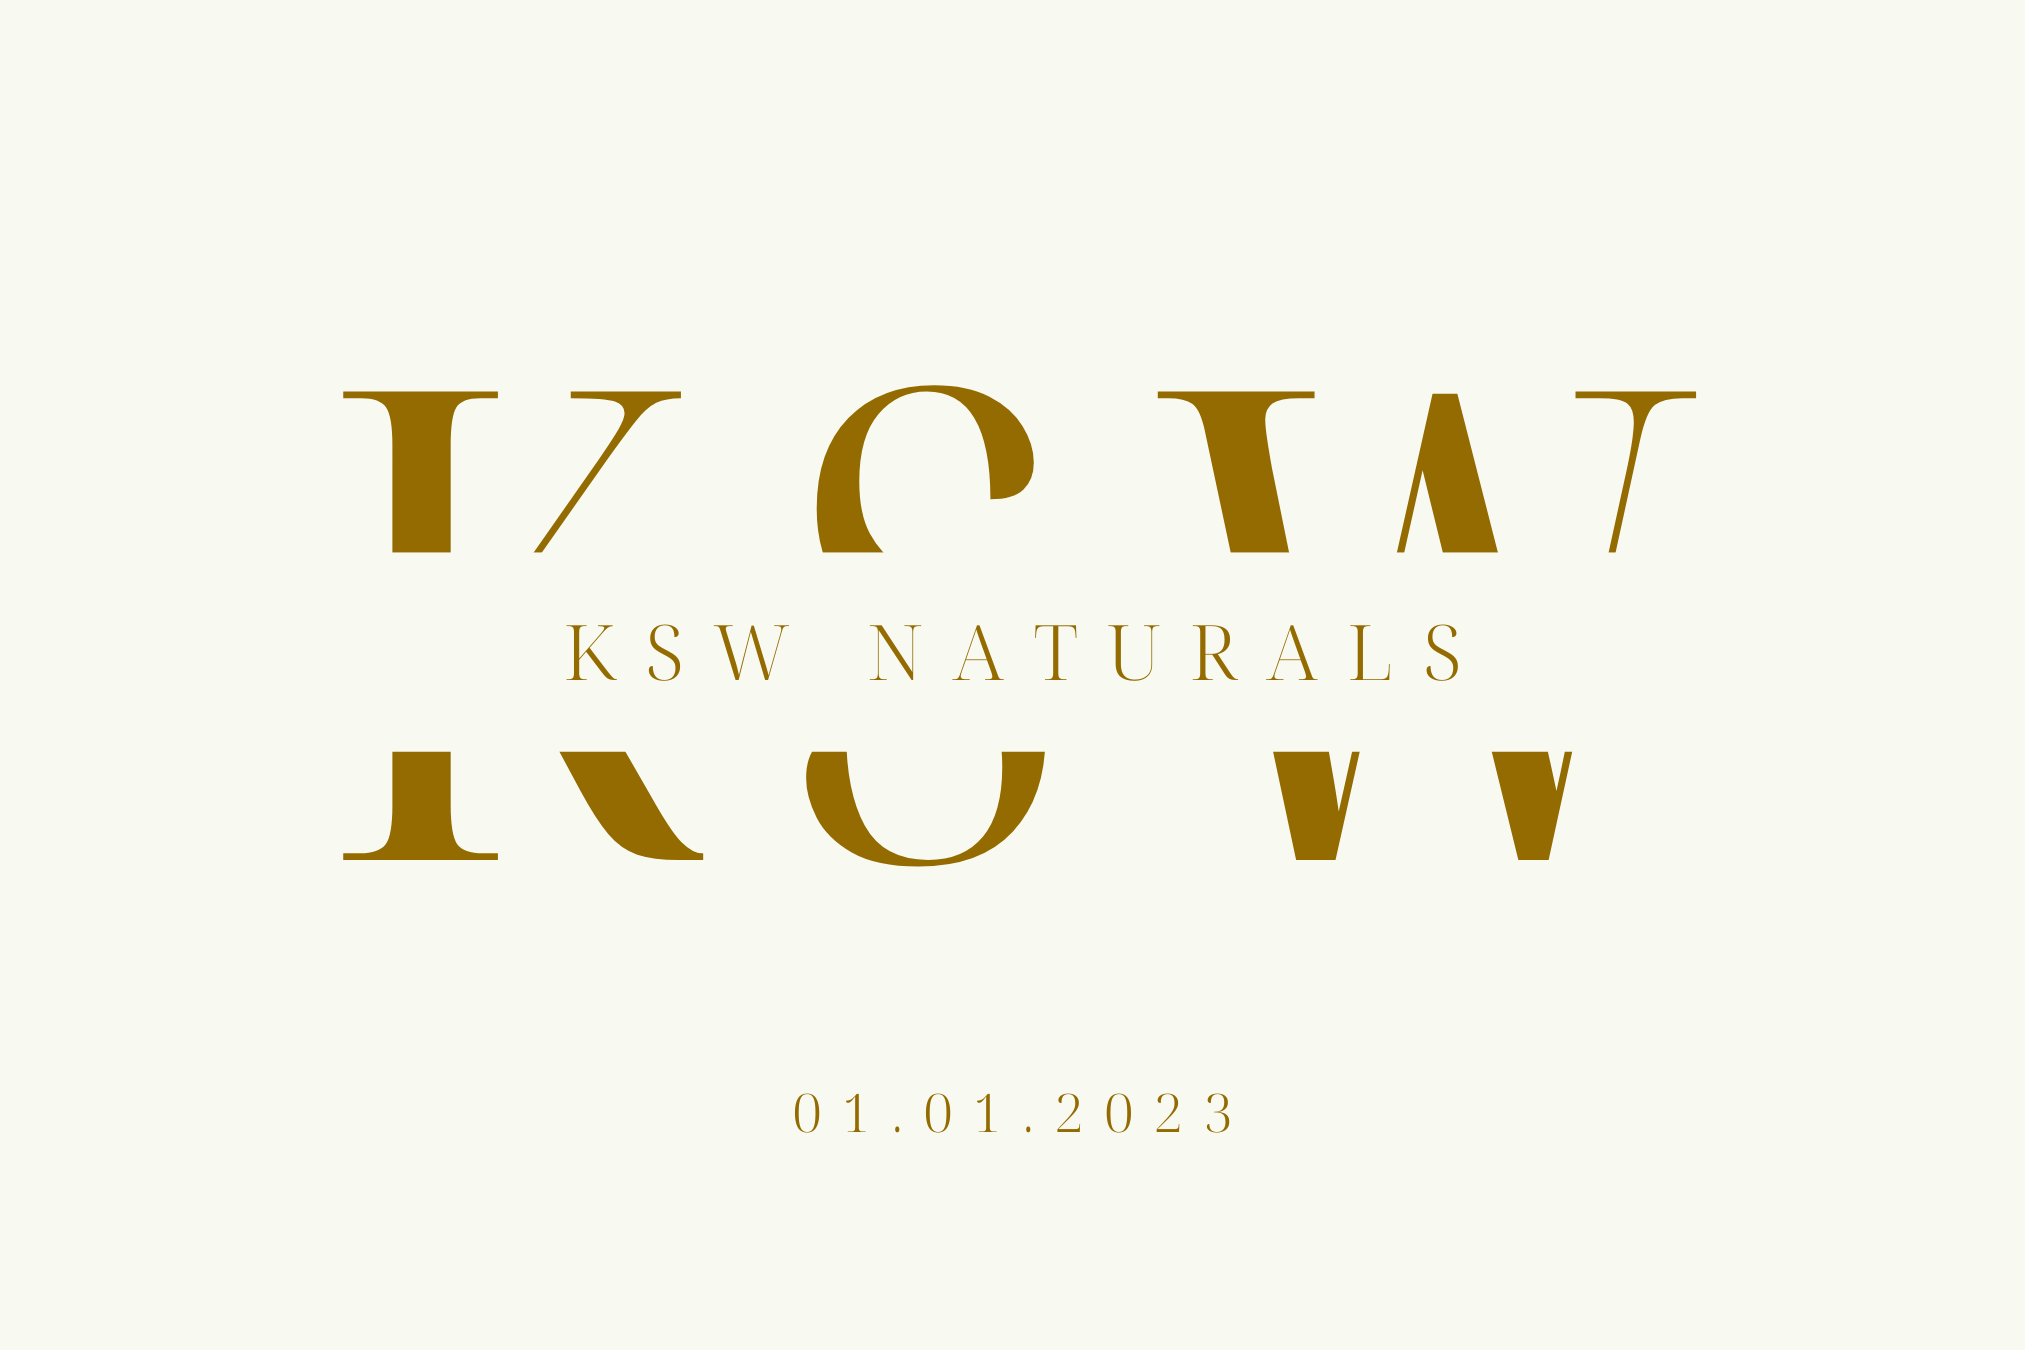 KSW Naturals